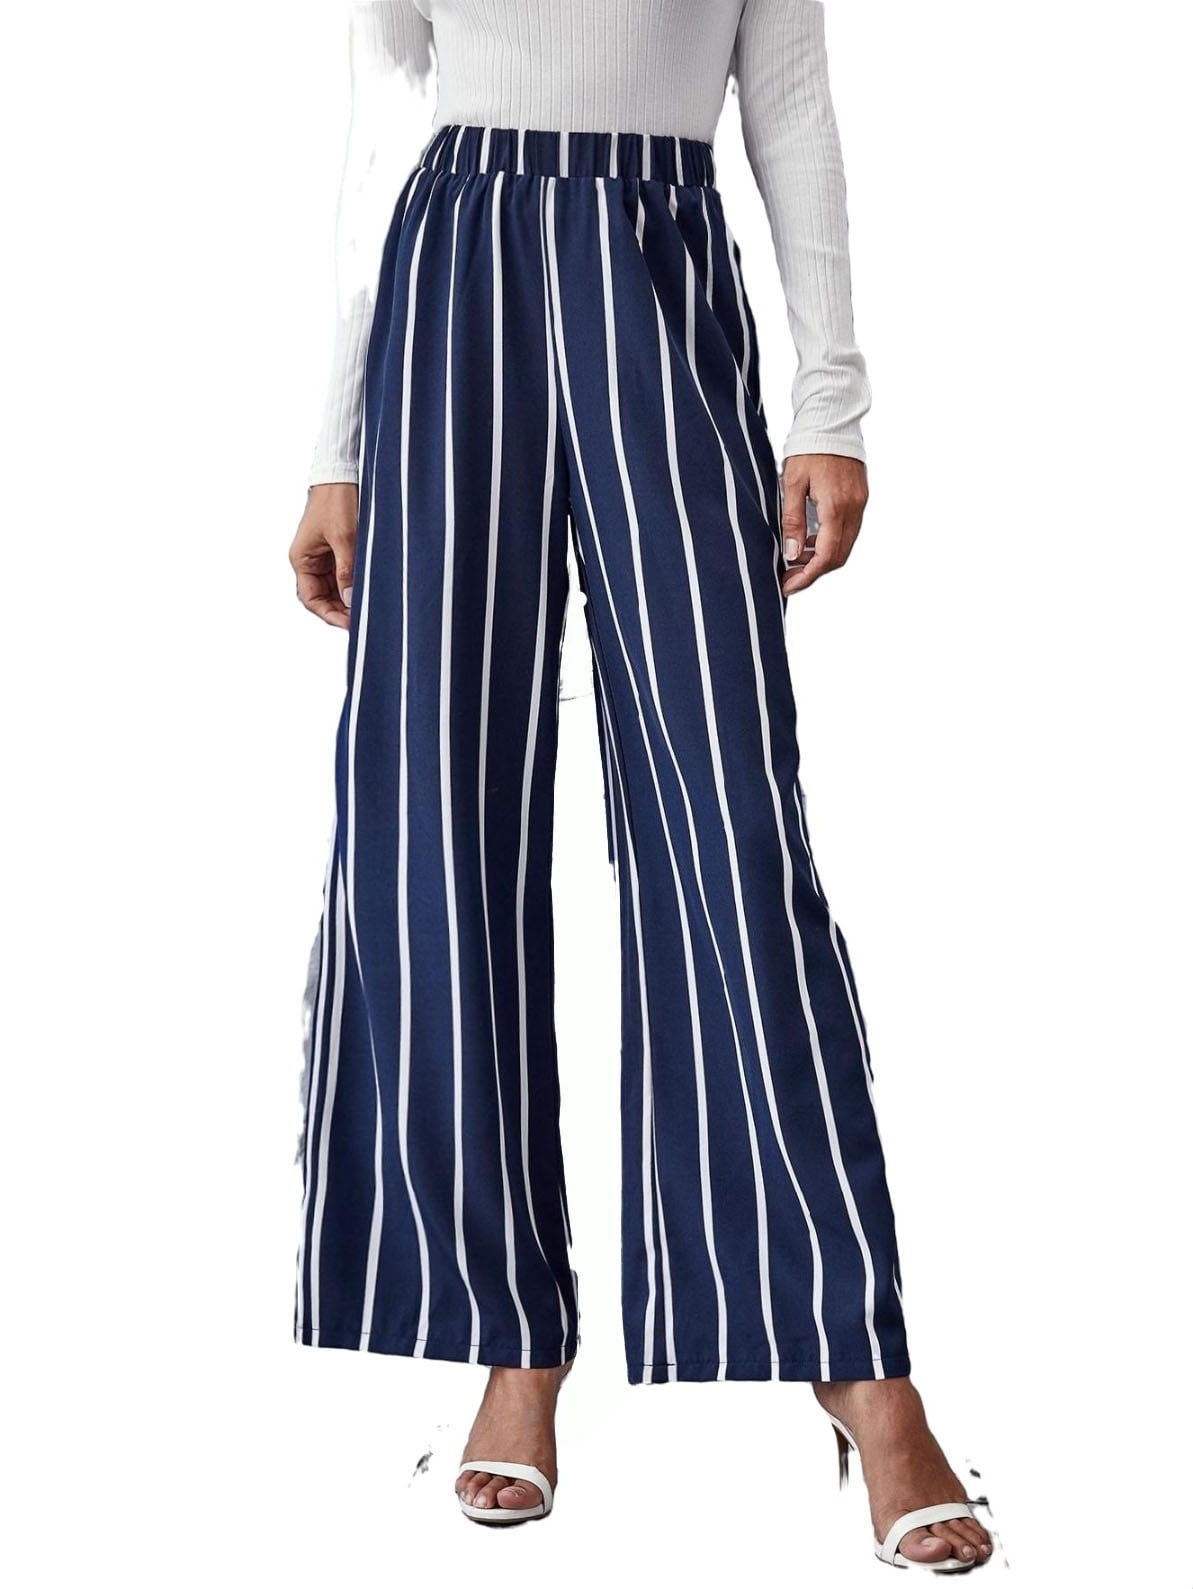 Women's Elastic High Waist Striped Wide Leg Pants Navy Blue